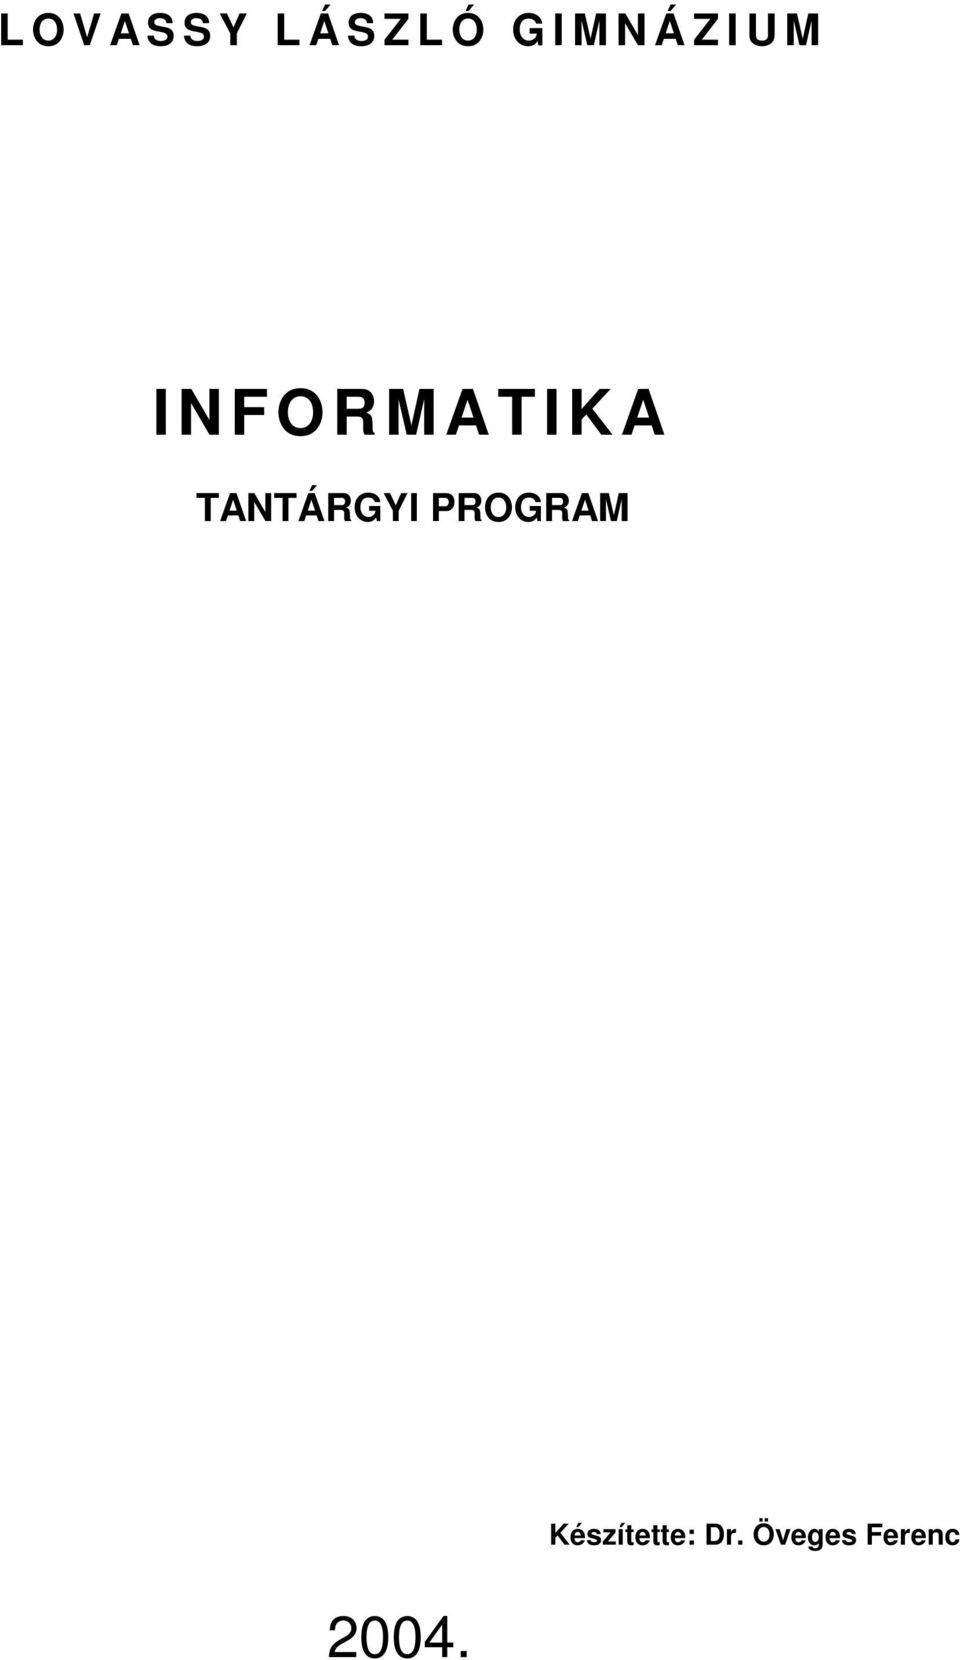 TANTÁRGYI PROGRAM 2004.